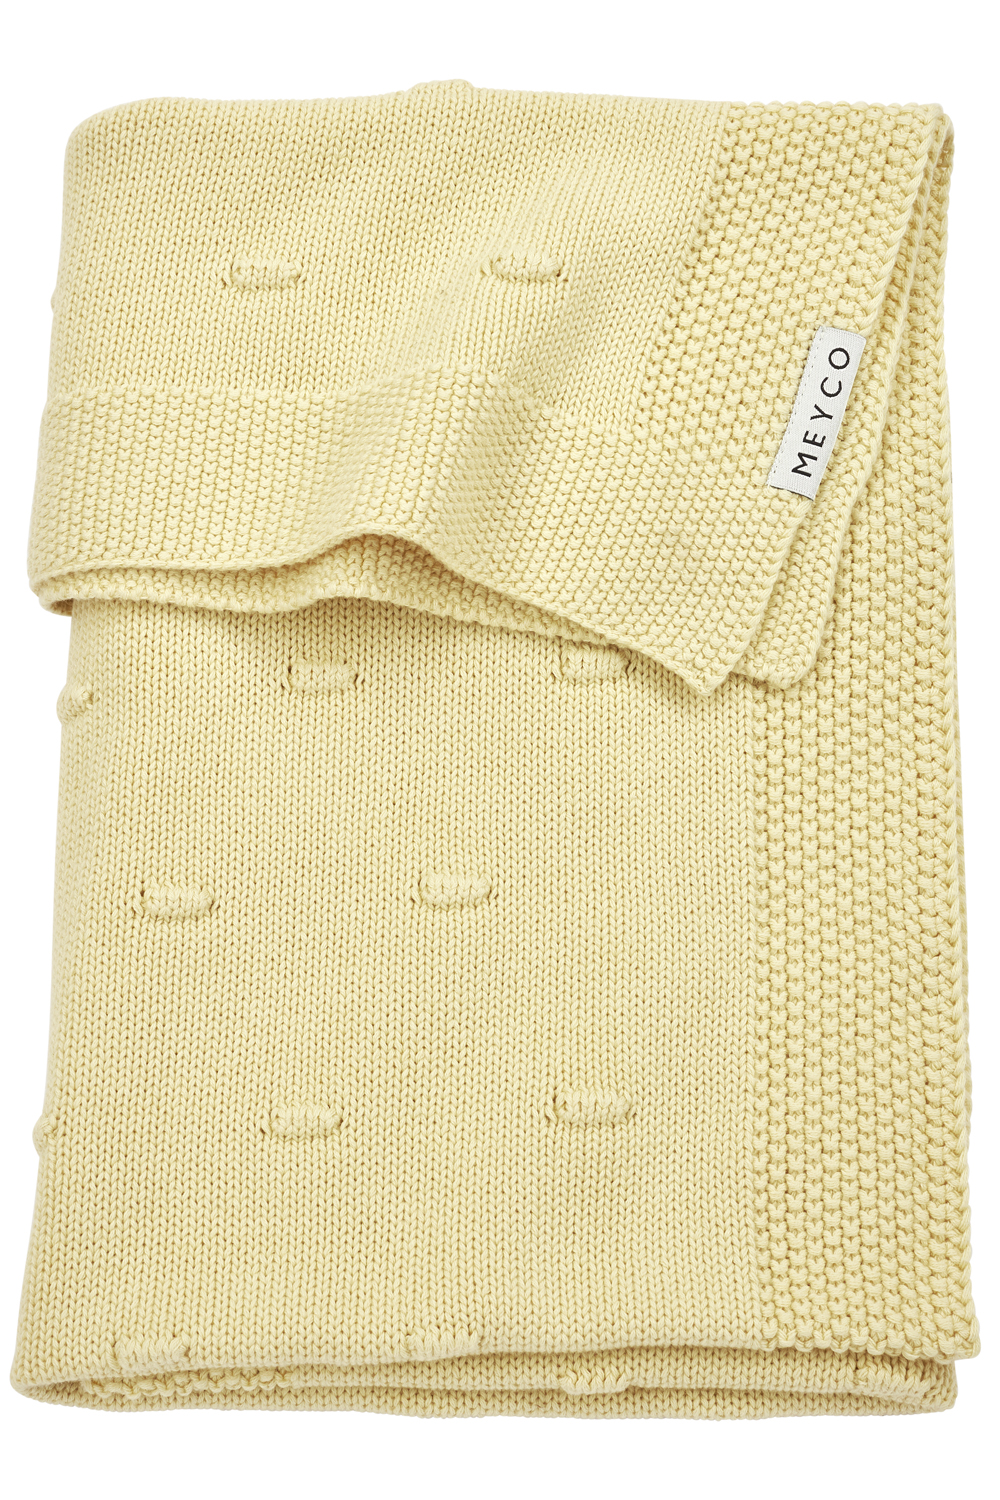 Babydecke gross Knots - Soft Yellow - 100x150cm